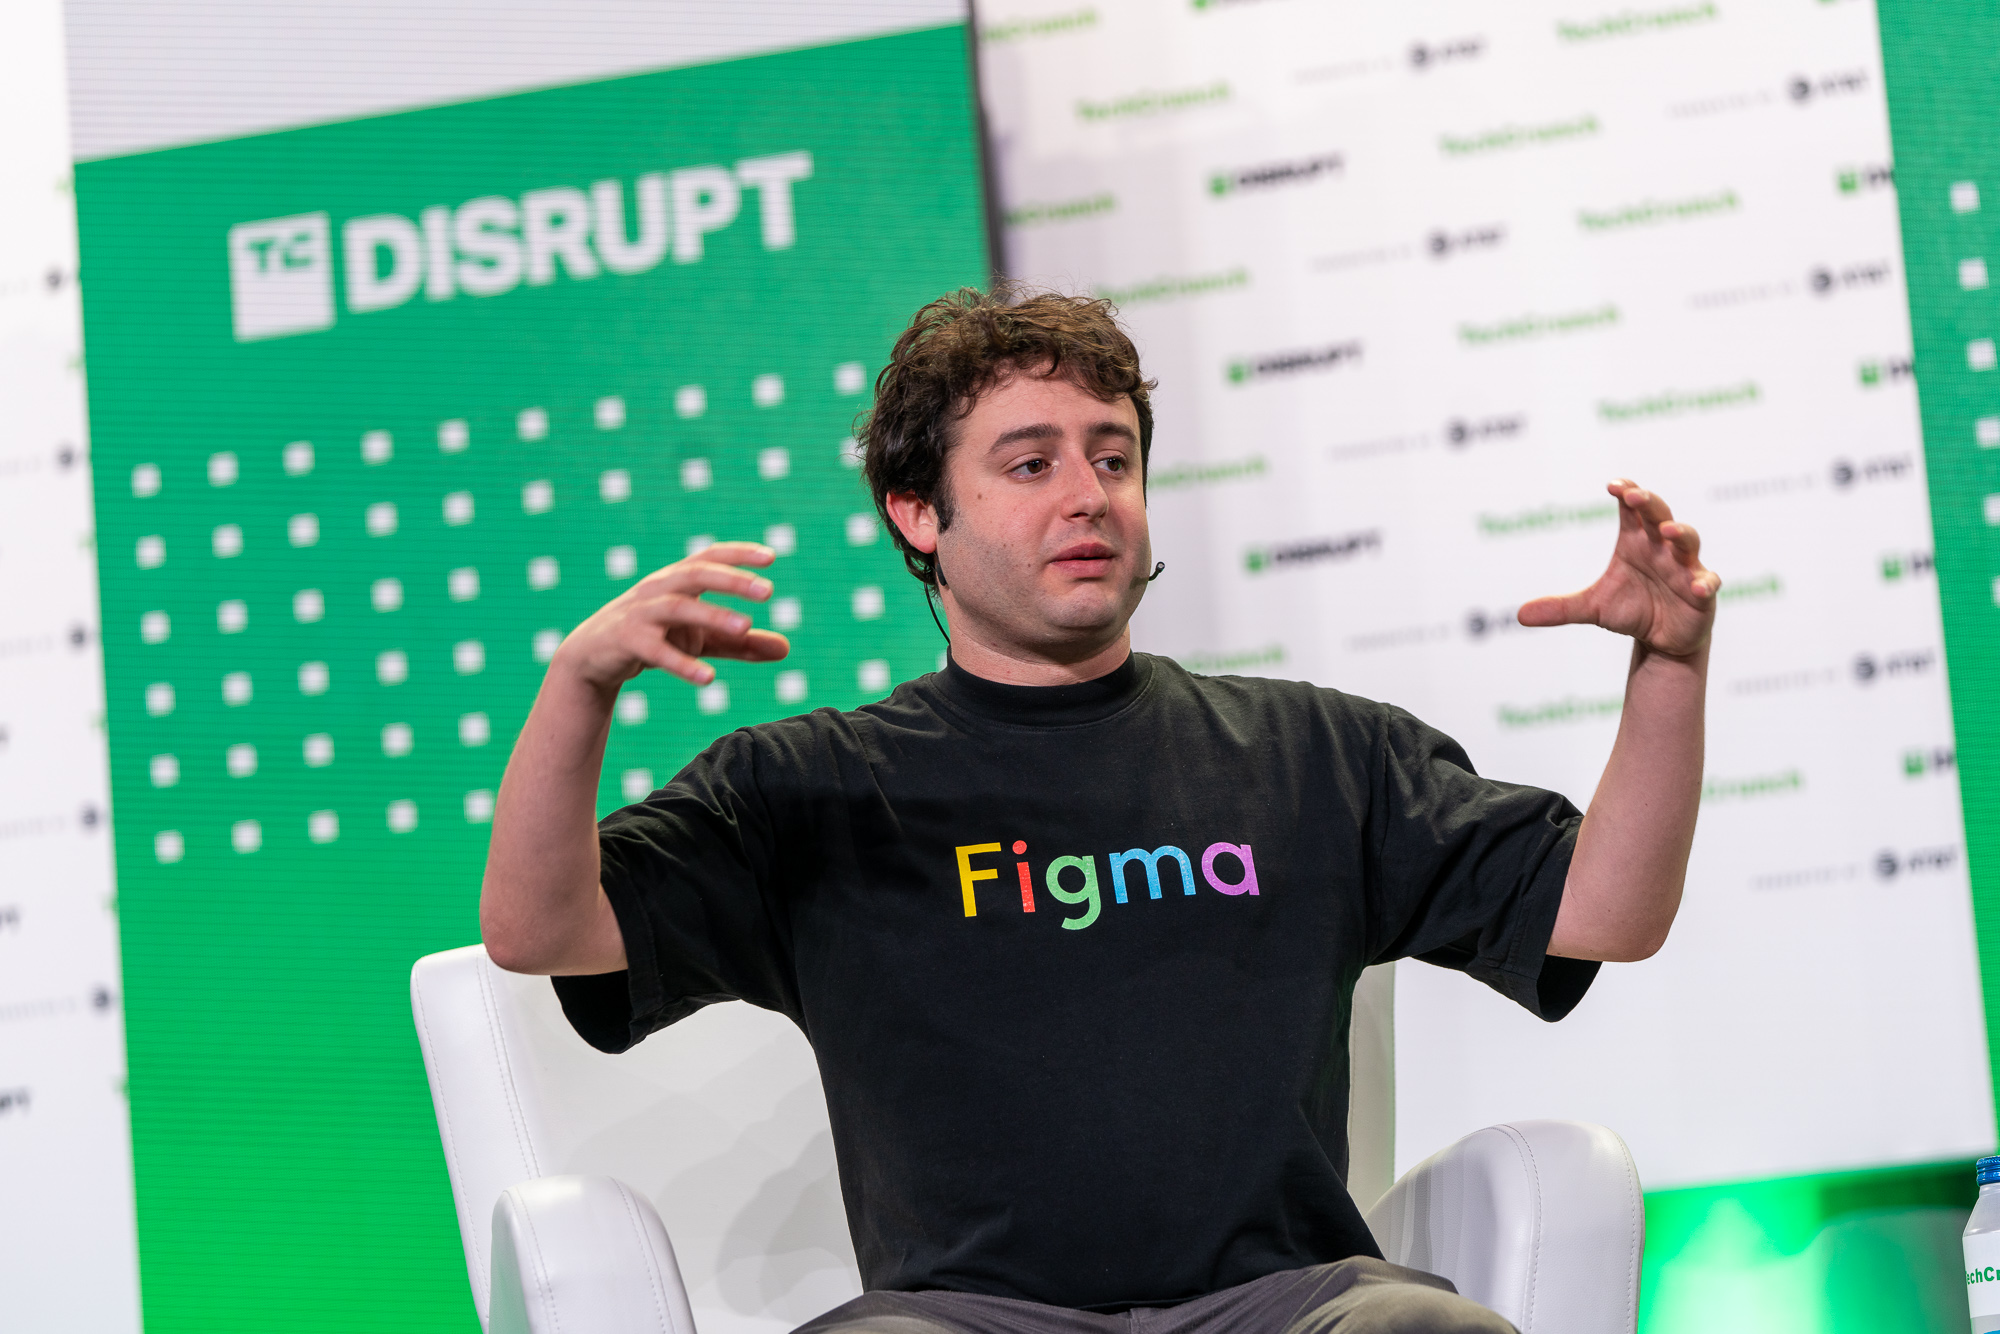 دیلن فیلد، مدیر عامل Figma، در مرحله TechCrunch Disrupt در سانفرانسیسکو در 20 اکتبر 2022. اعتبار عکس: Haje Kamps / TechCrunch